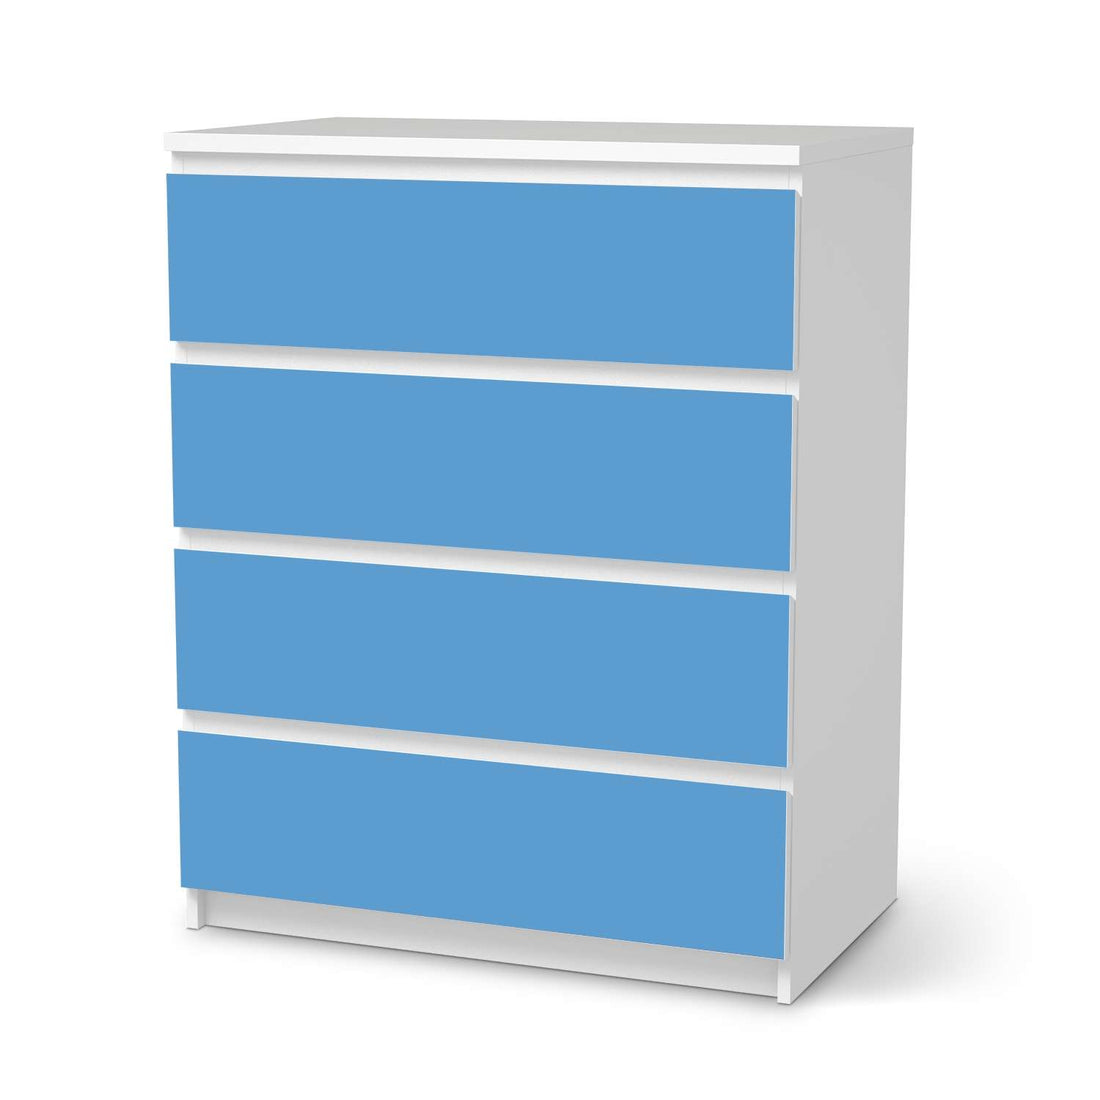 Folie für Möbel Blau Light - IKEA Malm Kommode 4 Schubladen  - weiss